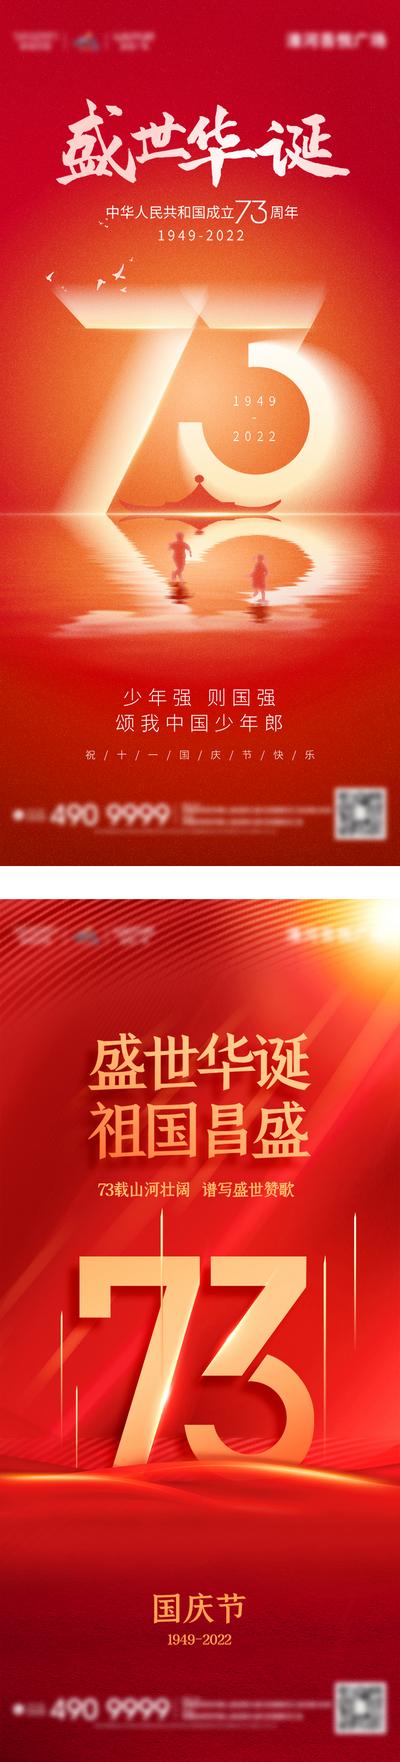 南门网 广告 海报 背景板 国庆 电商 地产 医美 活动 邀请函